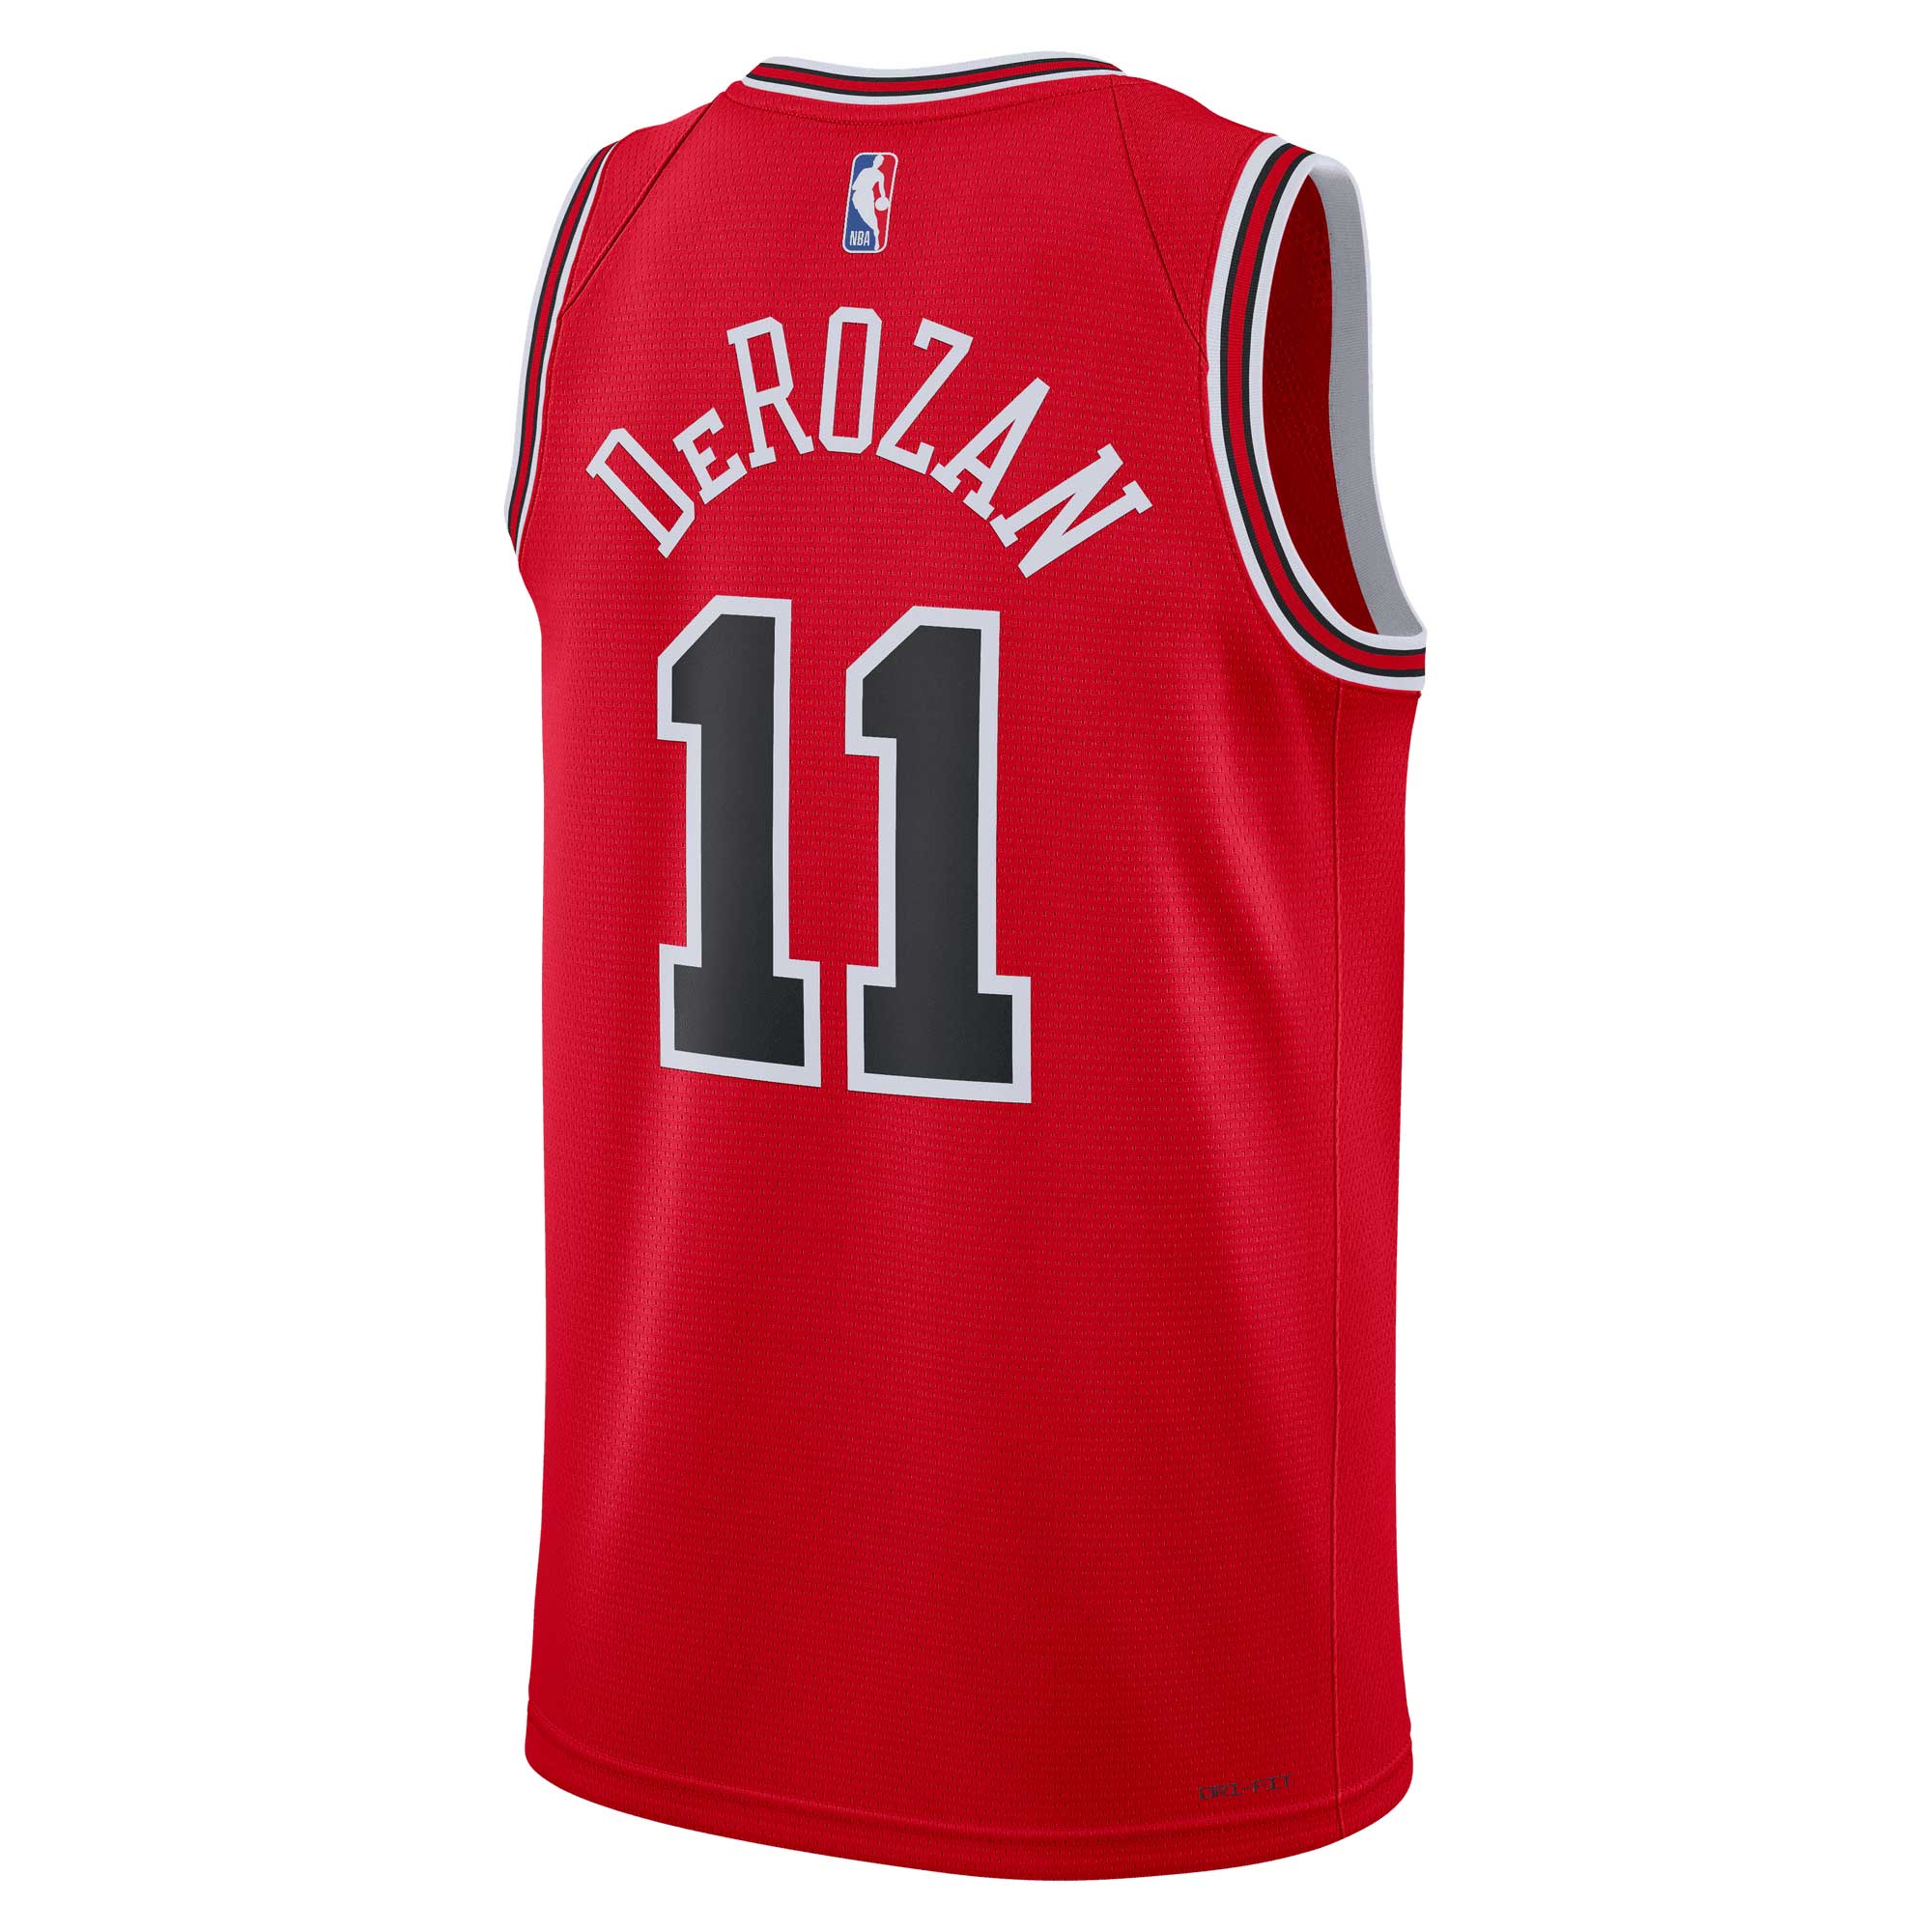 Nike Men's Chicago Bulls NBA Jerseys for sale